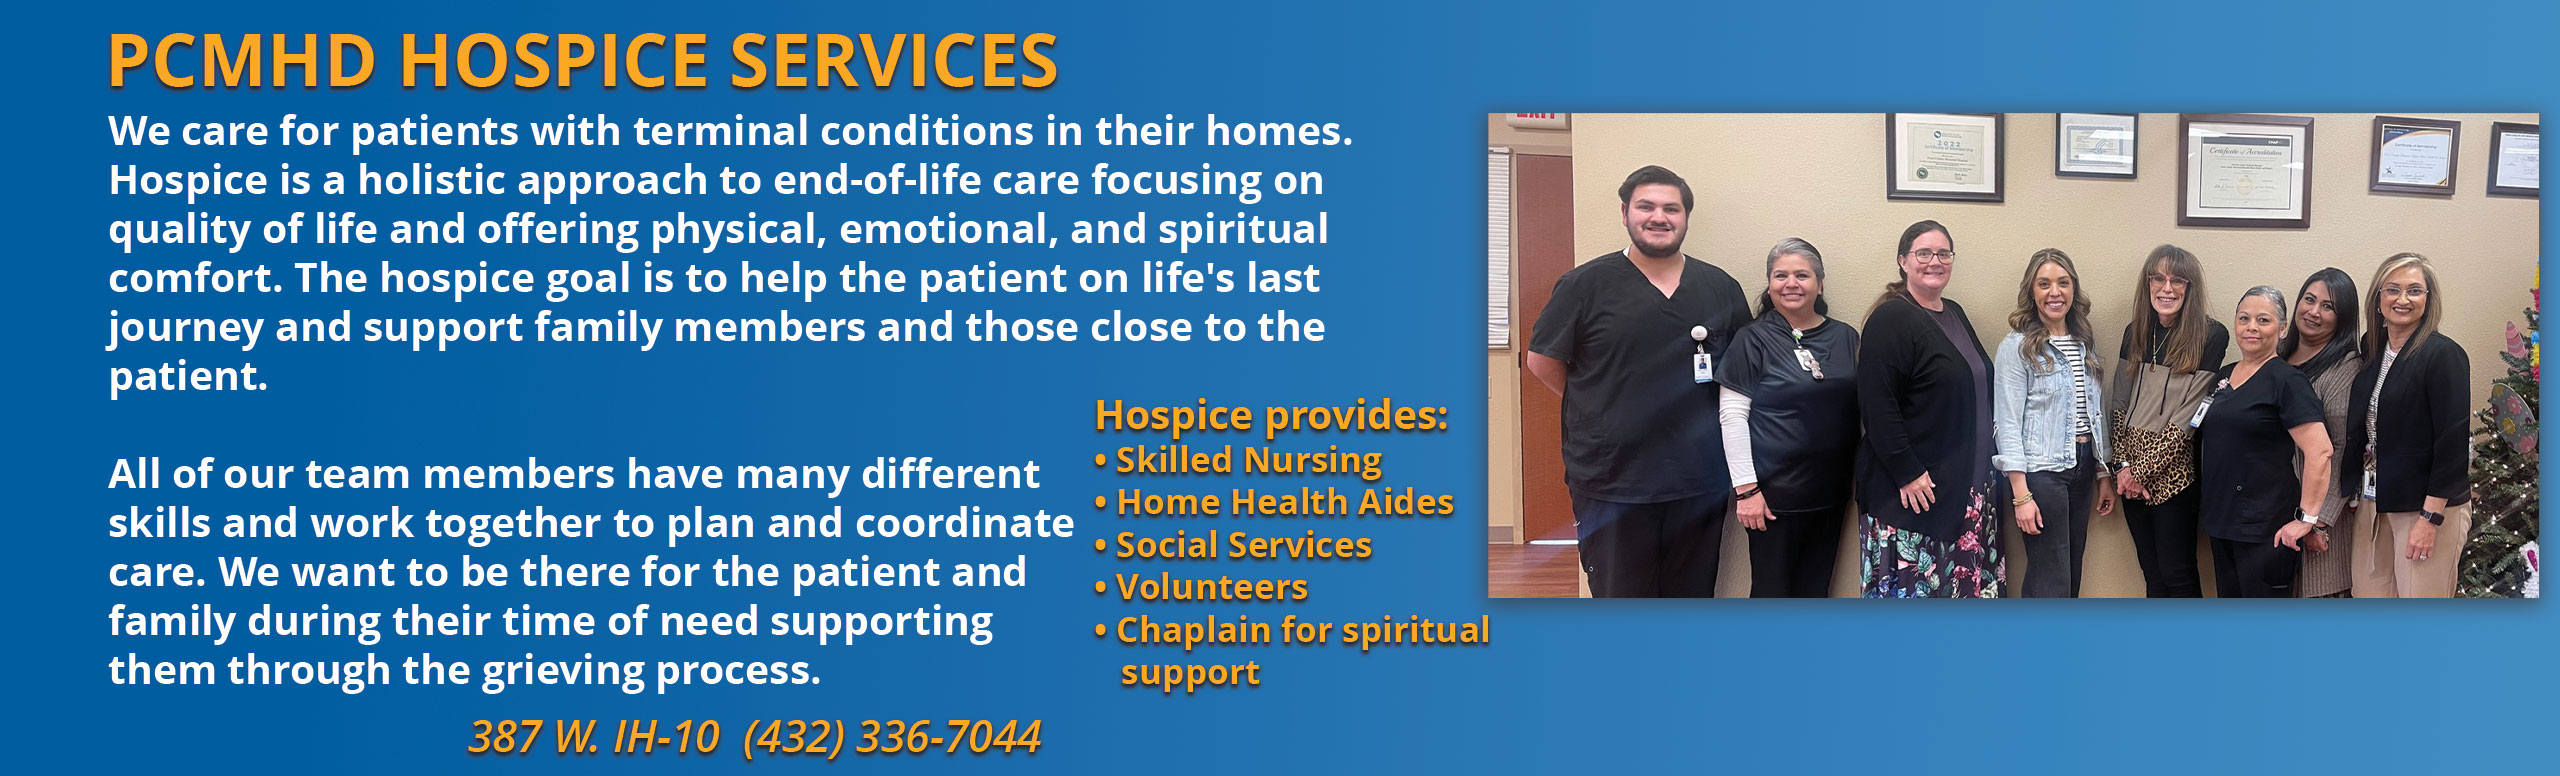 PCMH Hospice Services